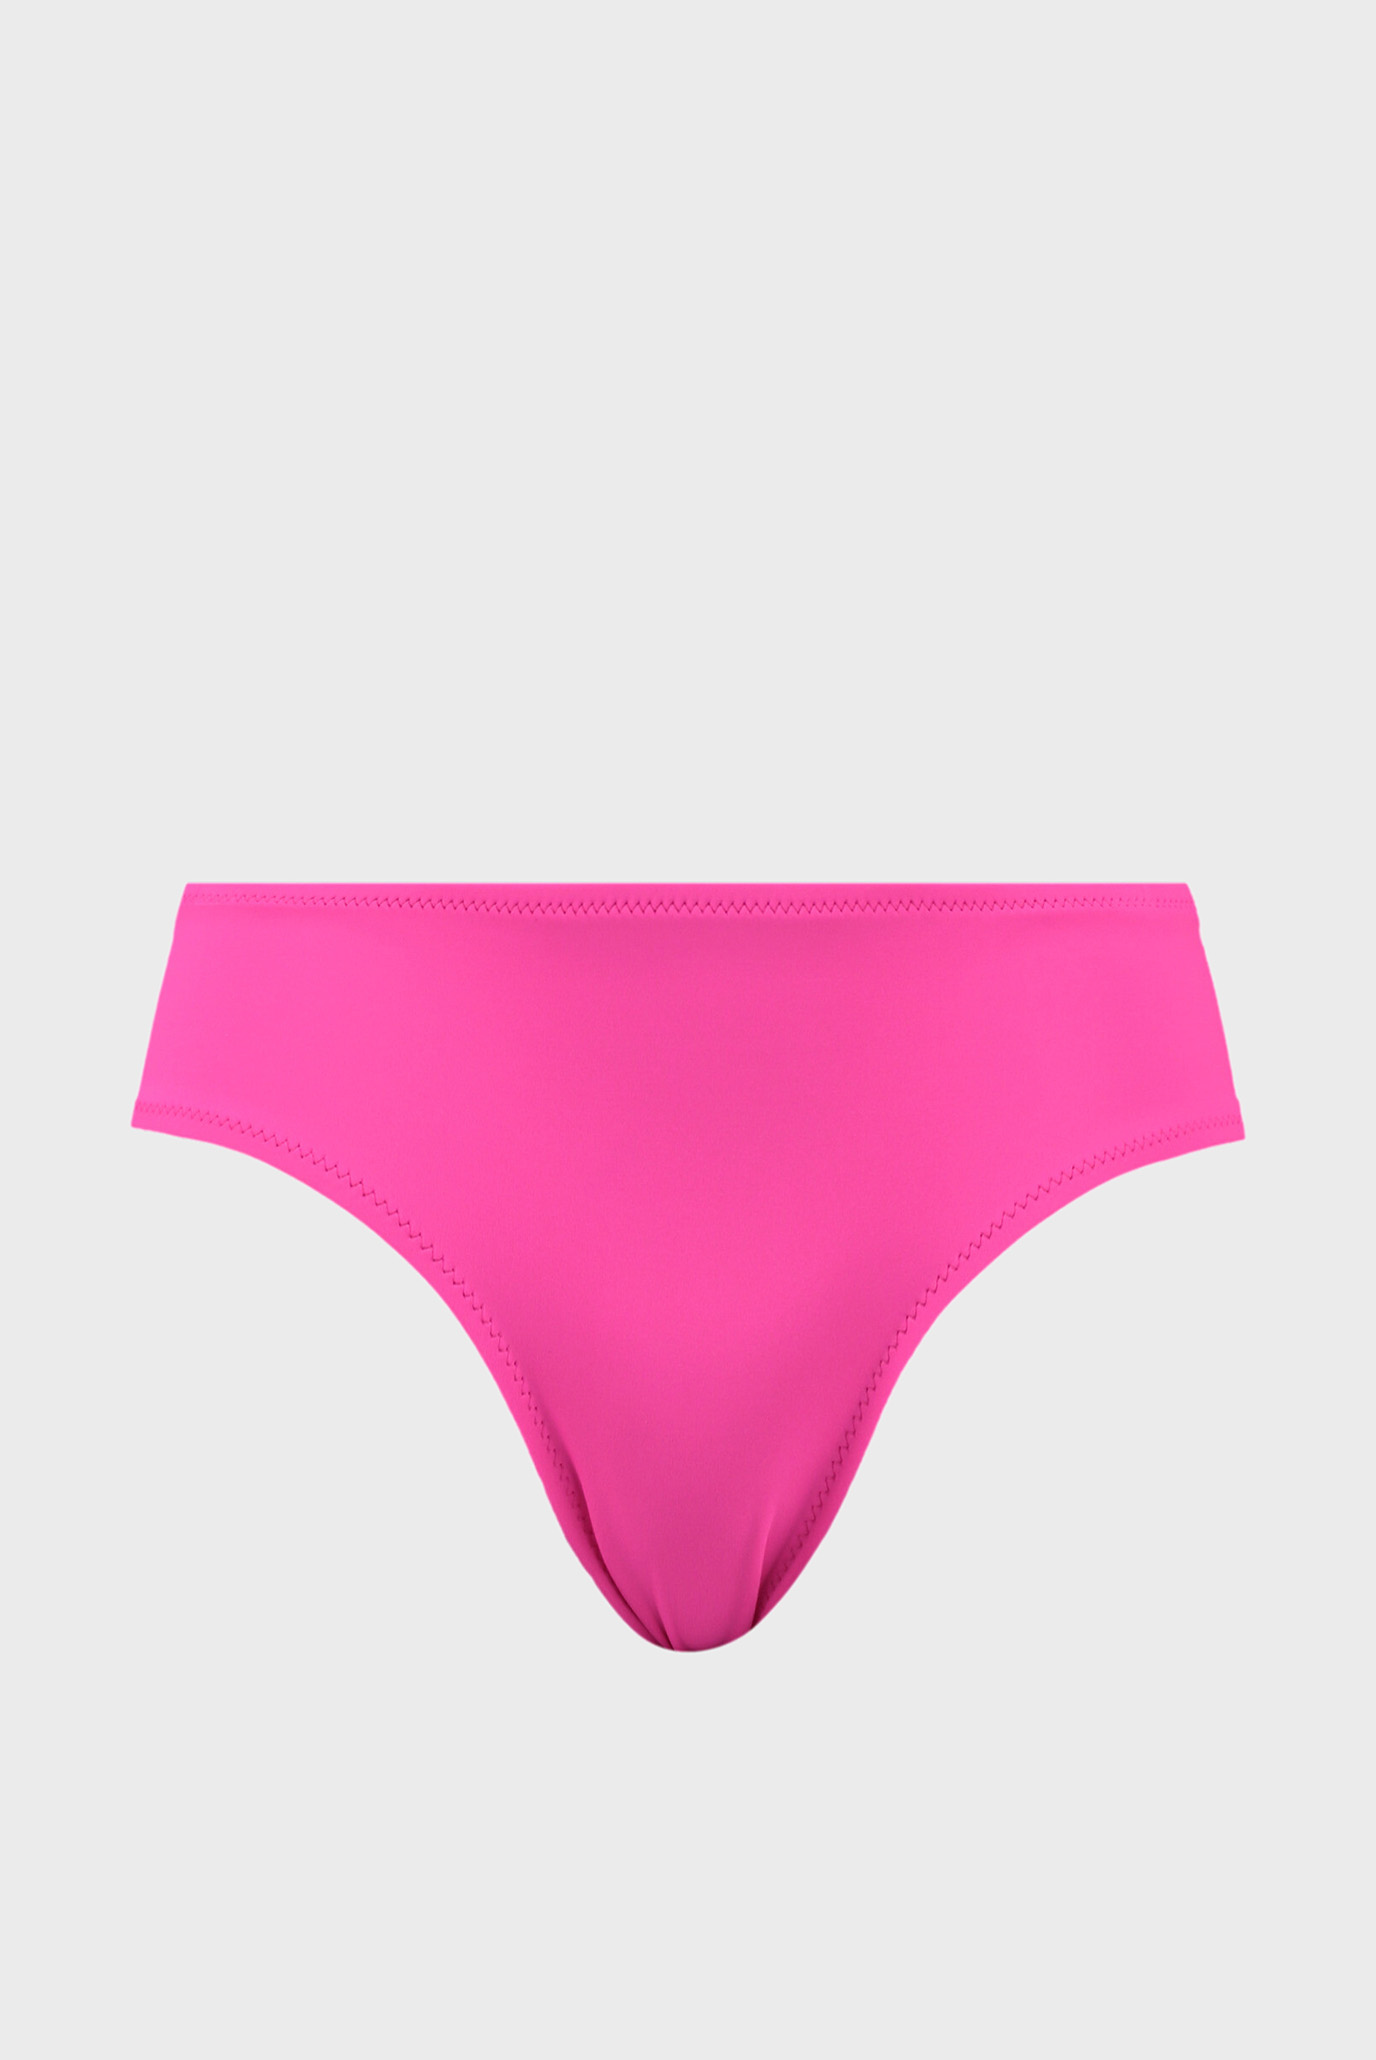 Женские розовые трусики от купальника Swim Women’s Hipster Bottom 1